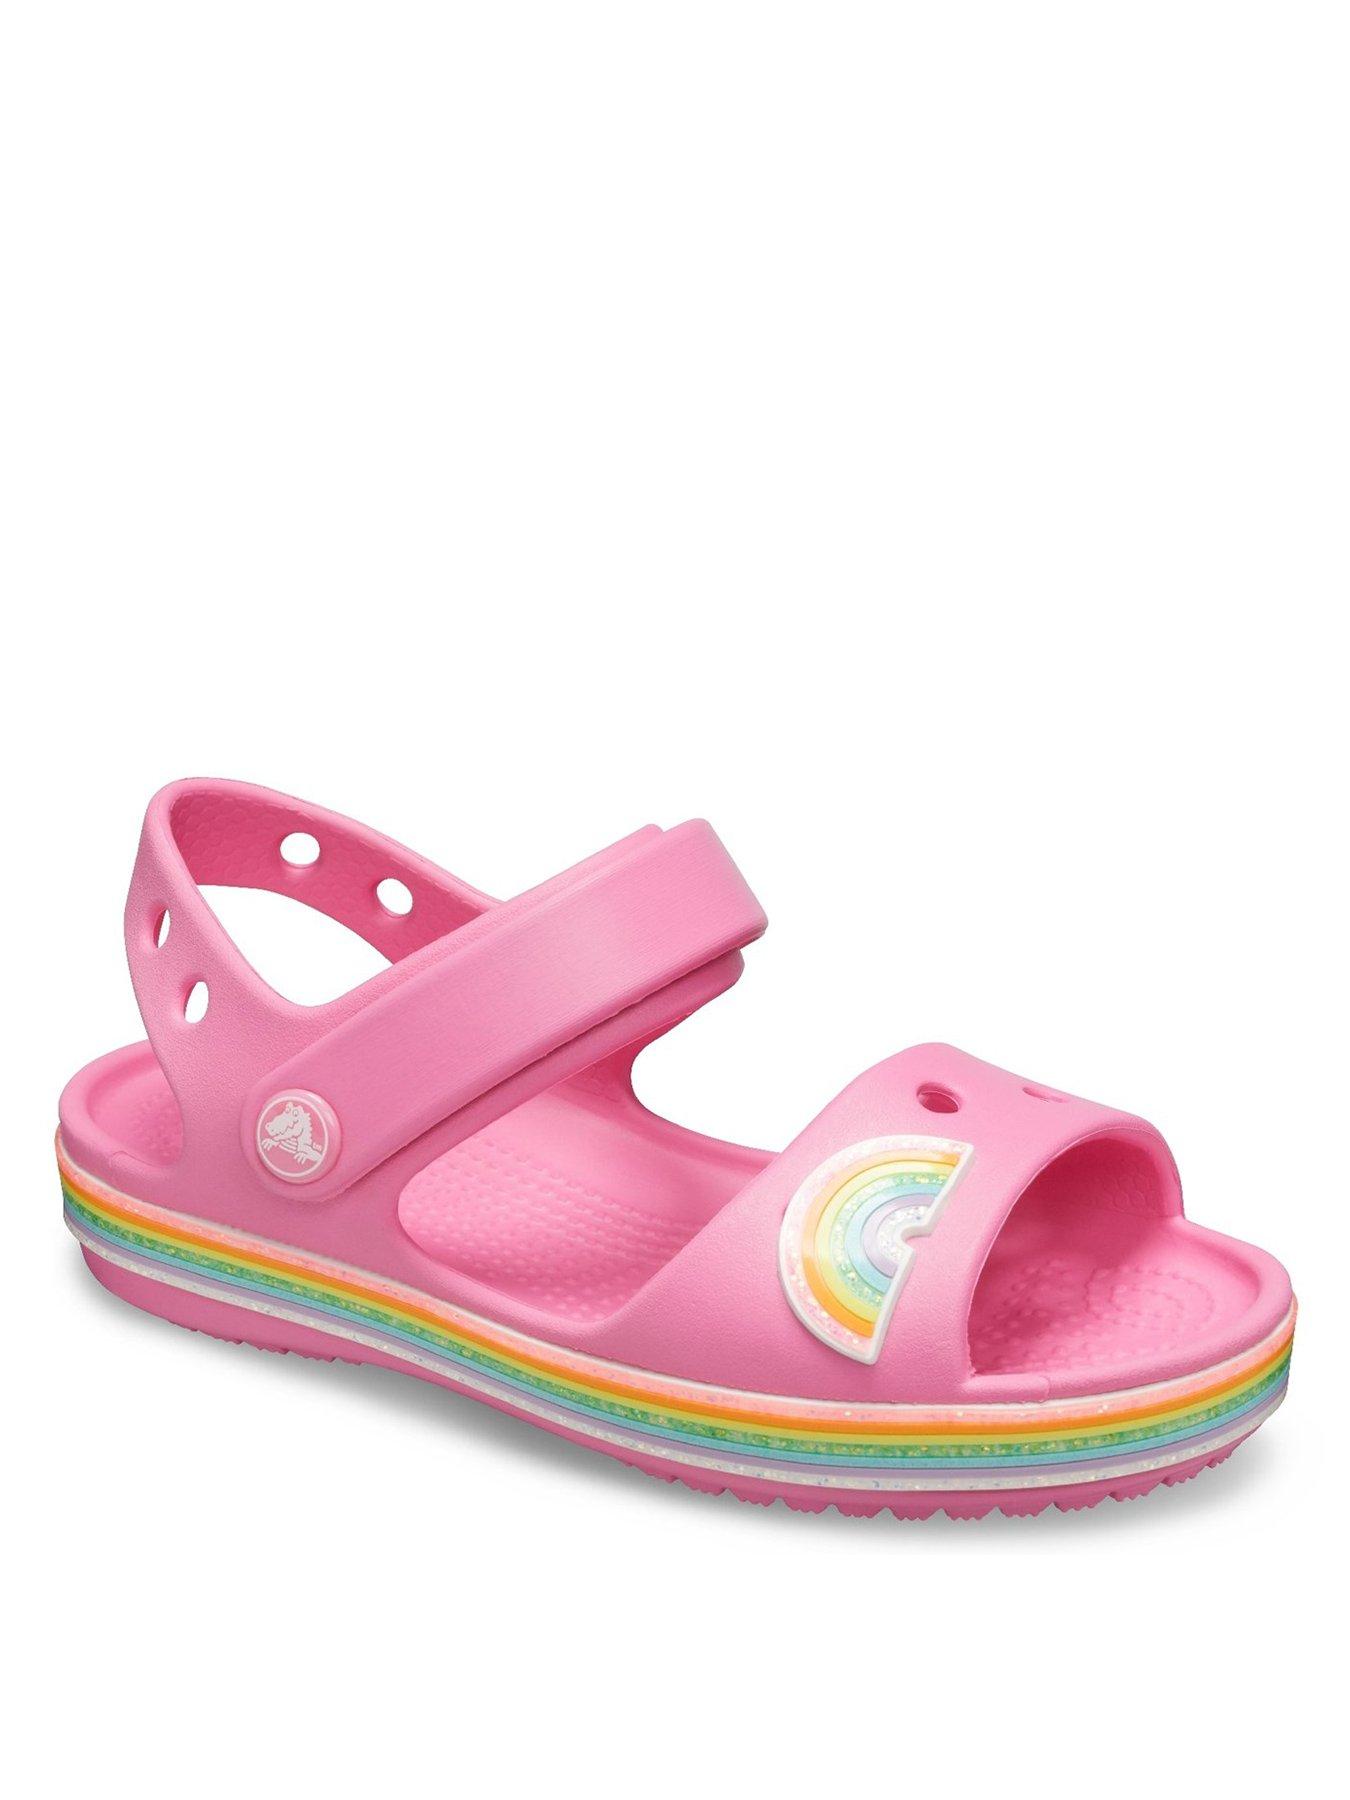 girls croc sandals